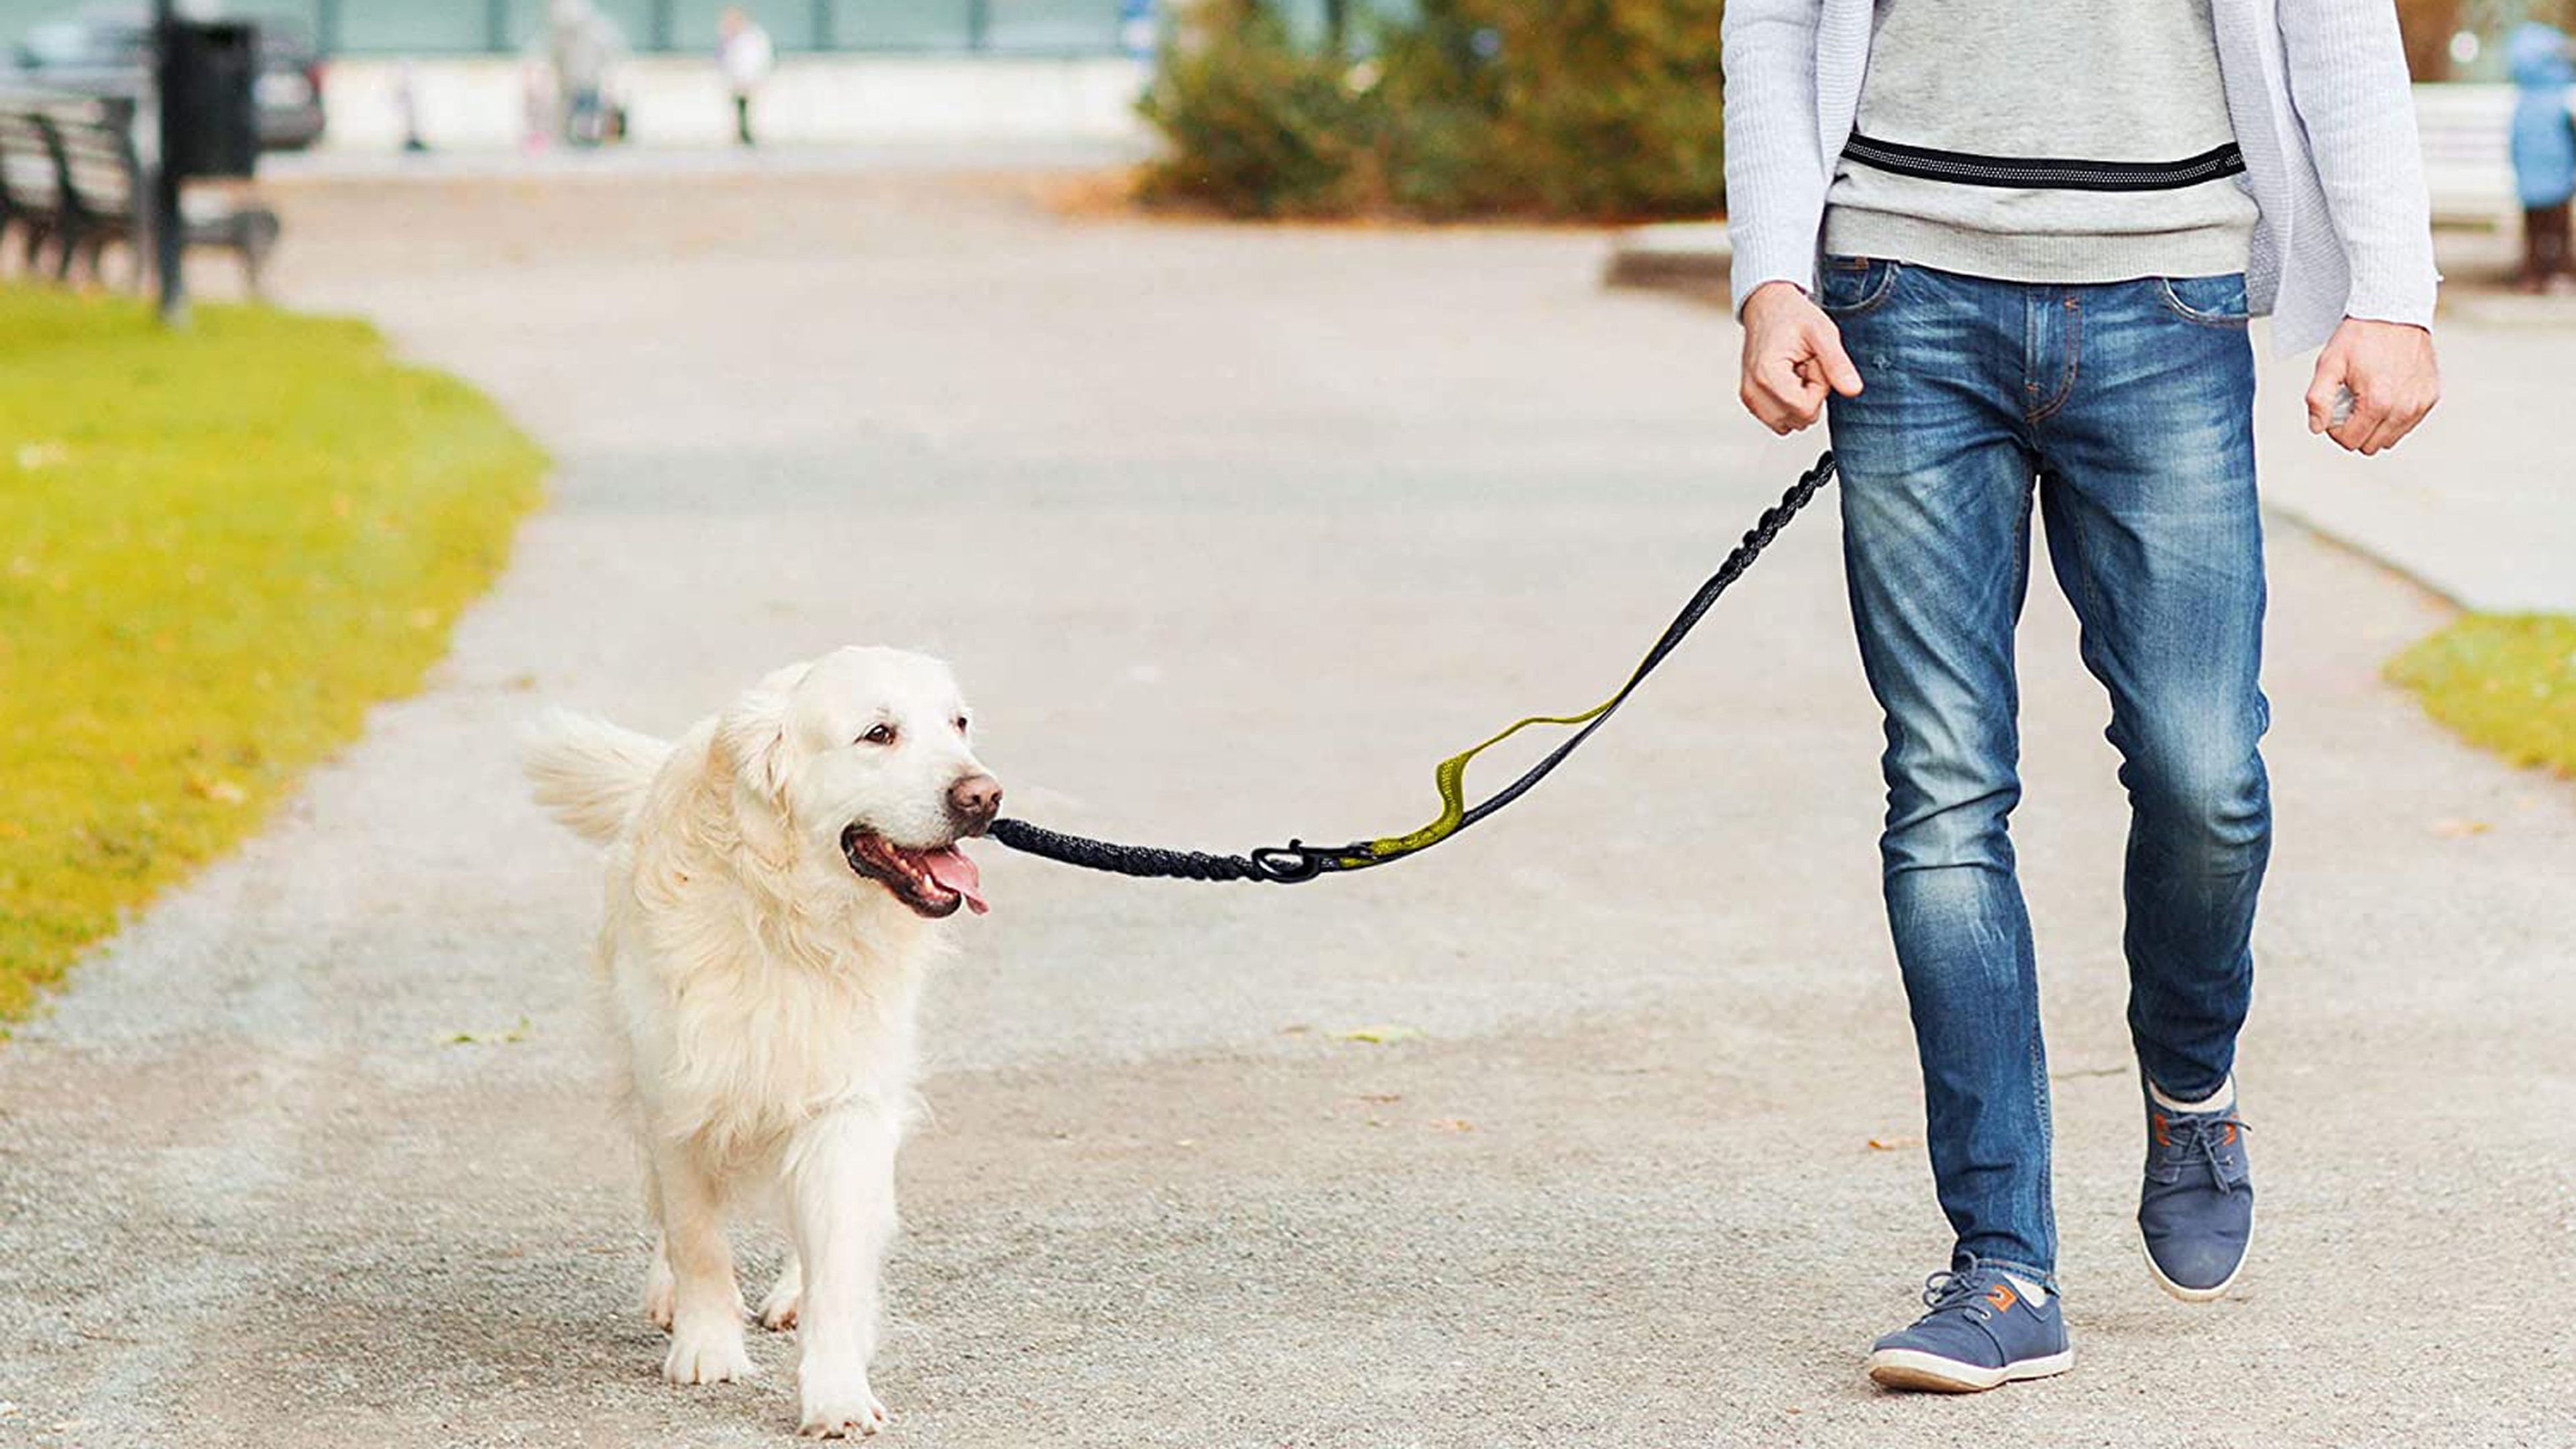 Siete correas para salir a correr con tu perro de manera cómoda y segura, Escaparate: compras y ofertas